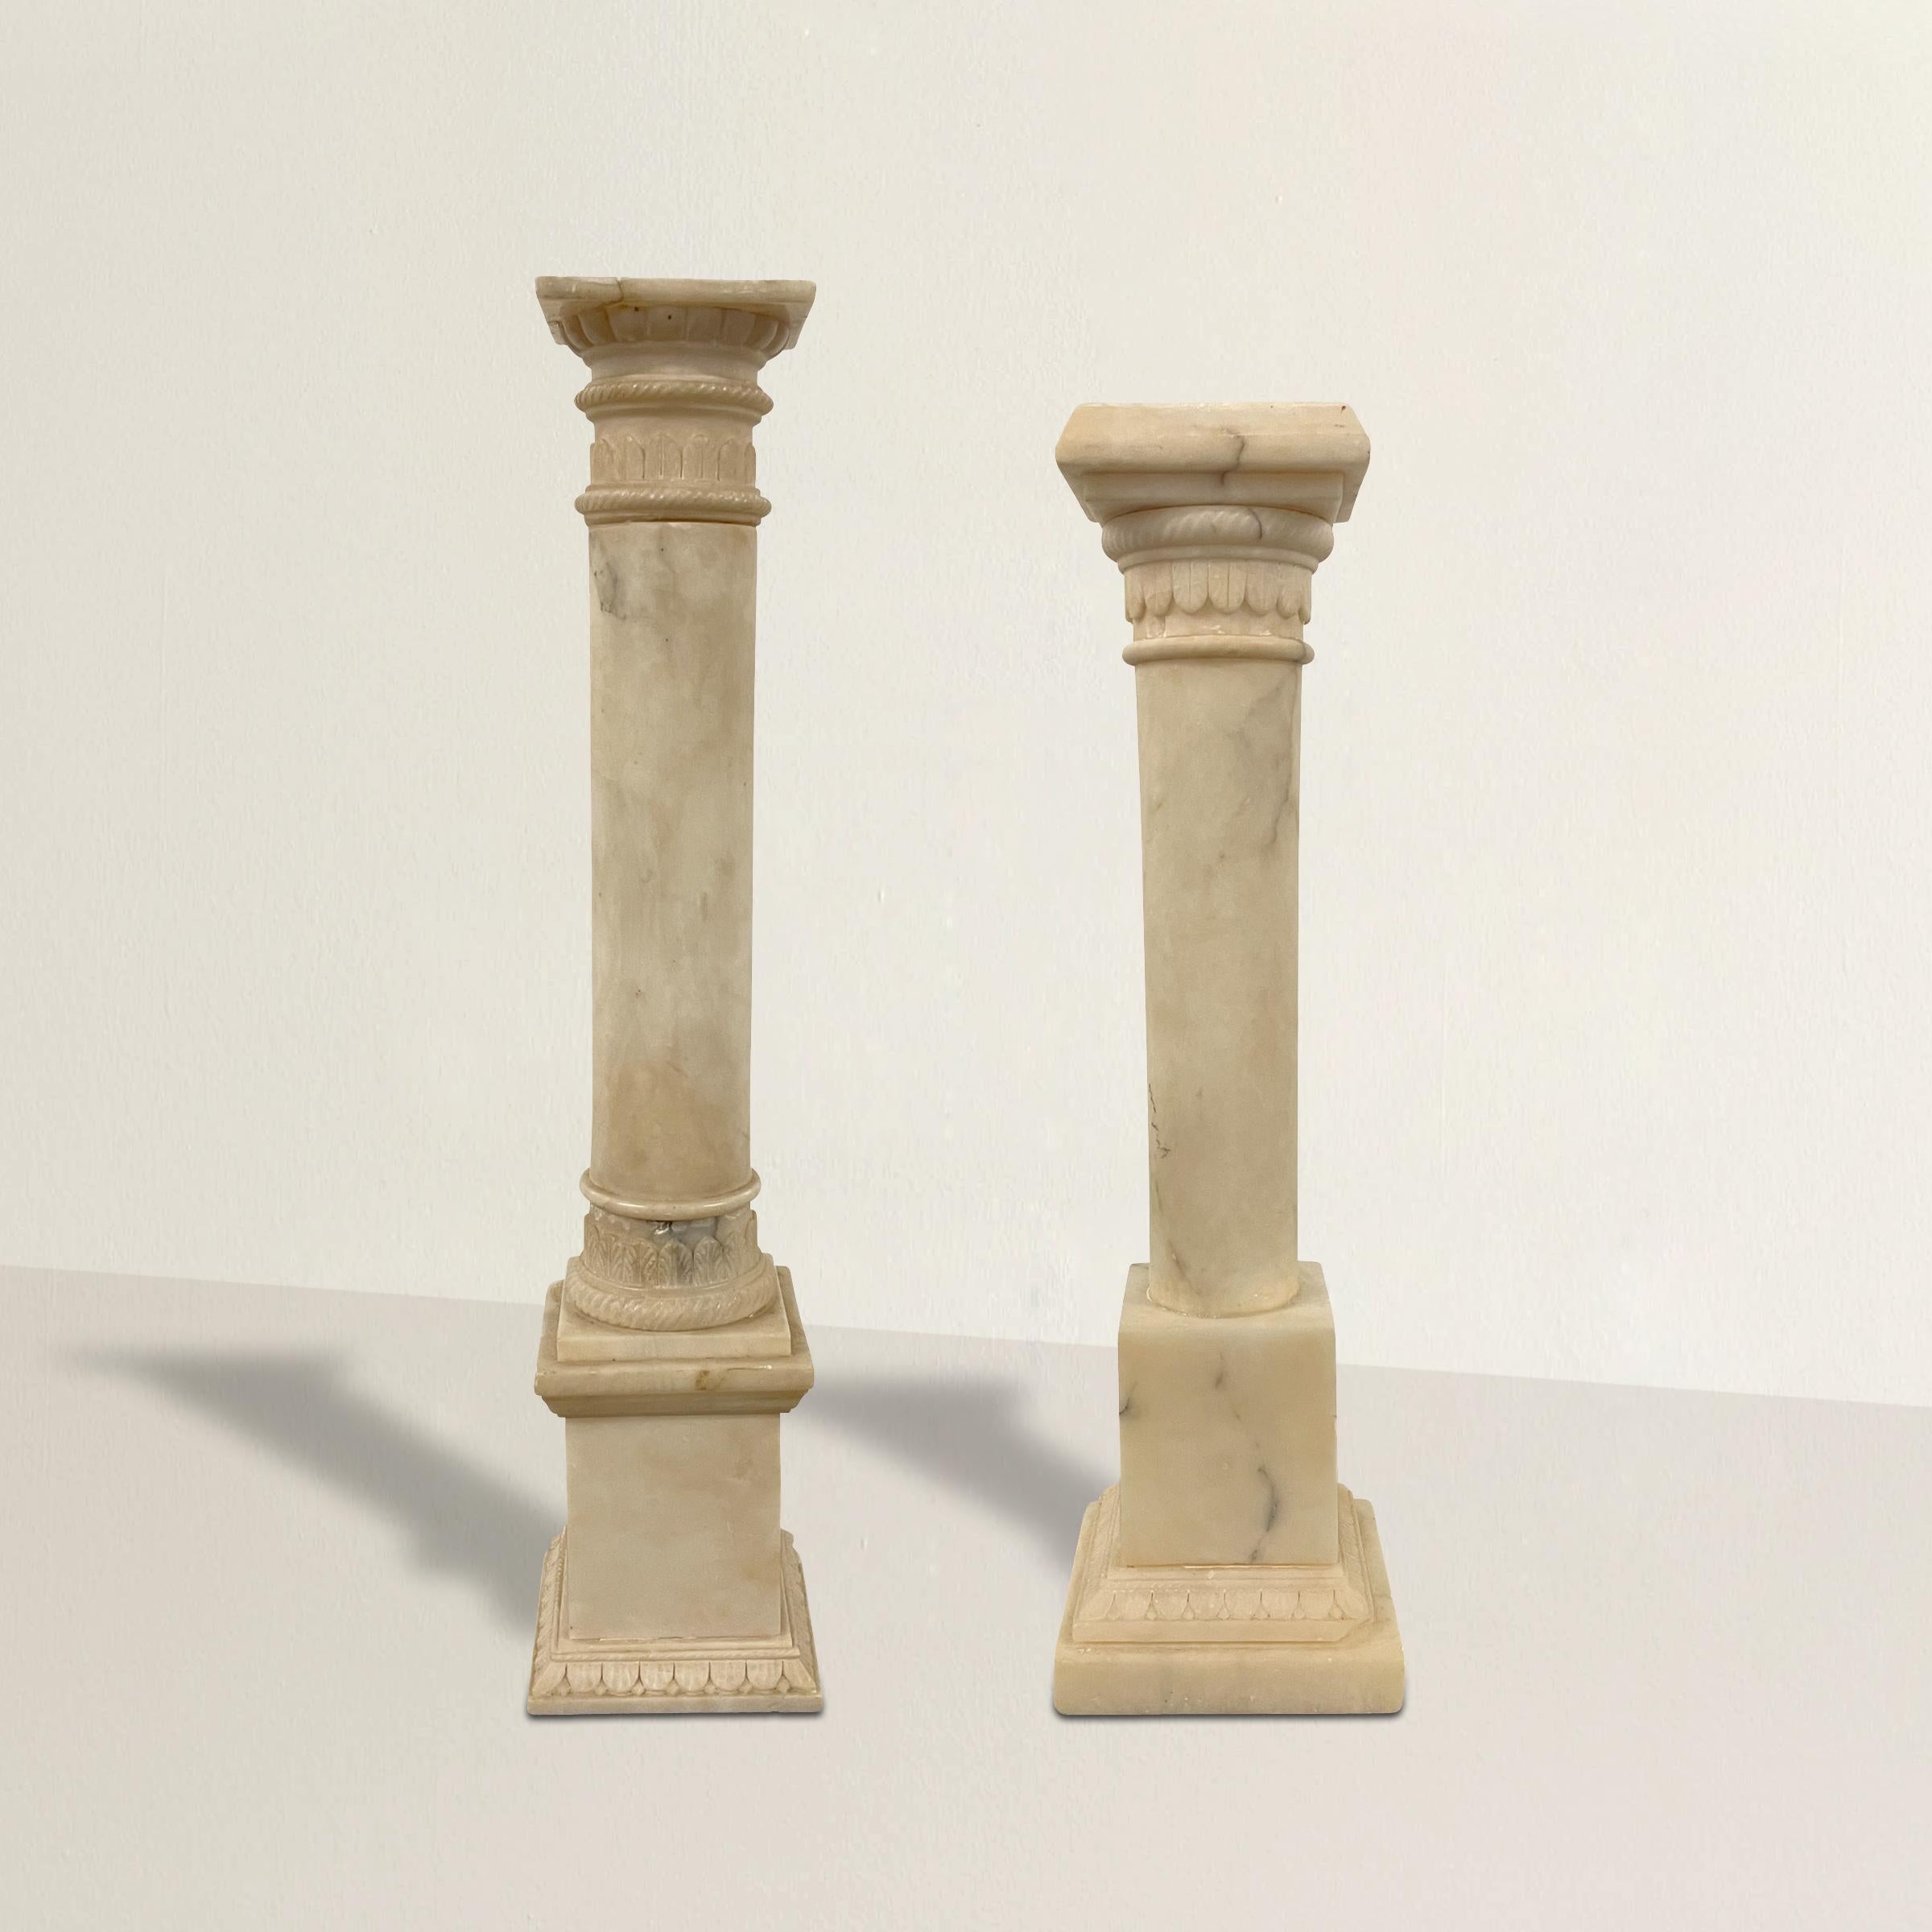 Zwei italienische Alabastersäulen im neoklassischen Stil des frühen 20. Jahrhunderts, die an Grand Tour-Geschenke erinnern, mit geschnitzten Akanthusblattdetails und auf quadratischen Sockeln mit weiteren geschnitzten Blattdetails.

Maße: Kürzer: